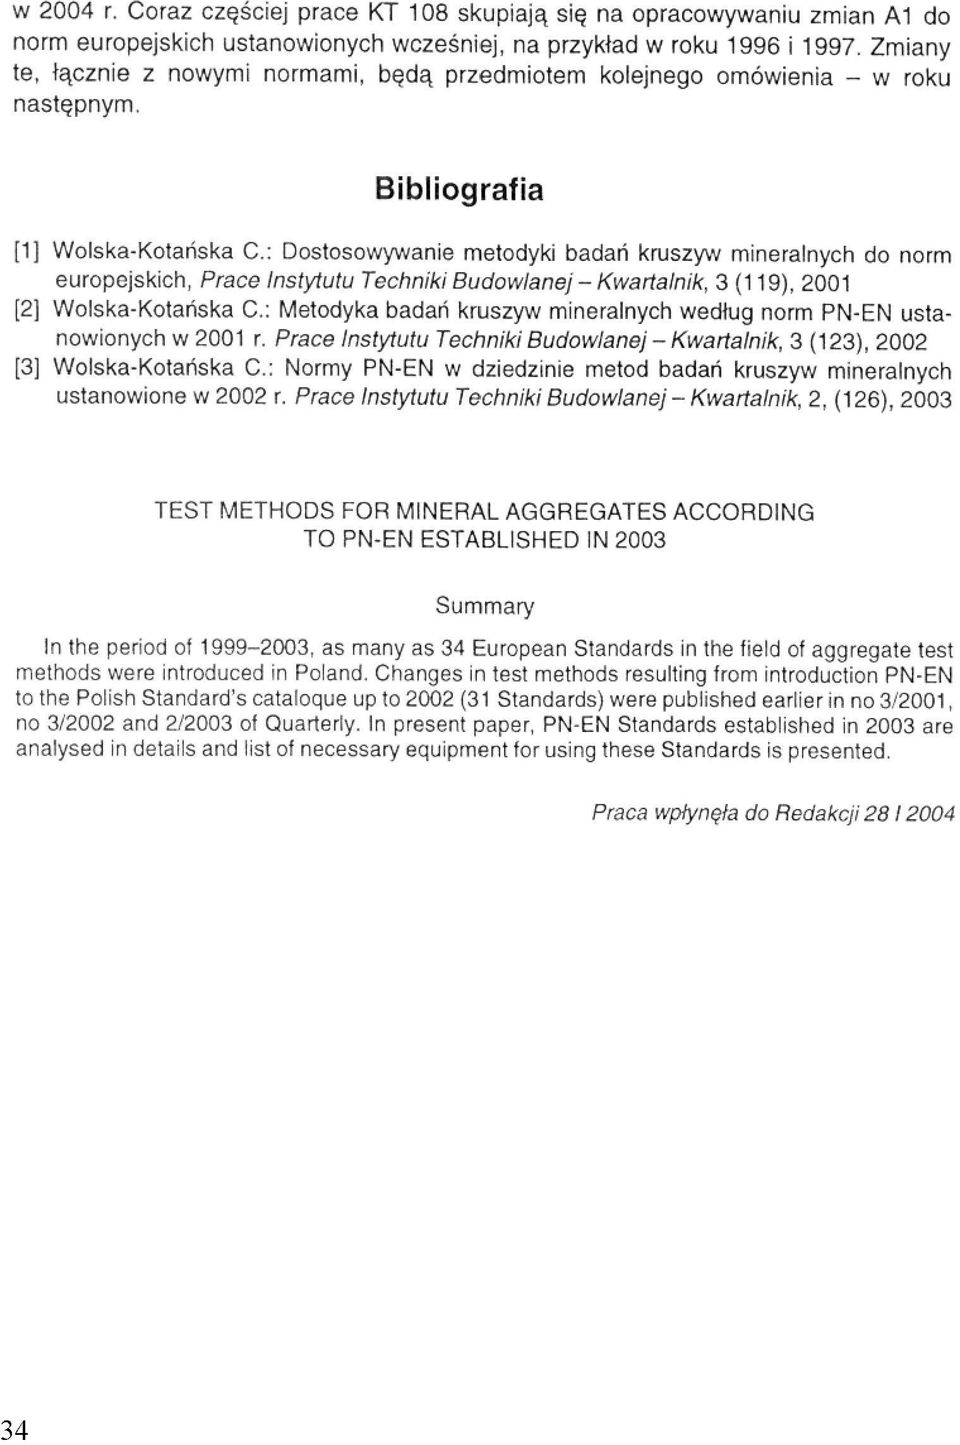 europejskich, Prace Instytutu Techniki Budowlanej - Kwartalnik, 3 (119), 2001 [2] Wolska-Kotańska C,: Metodyka badań kruszyw mineralnych według norm PN-EN ustanowionych w 2001 r.